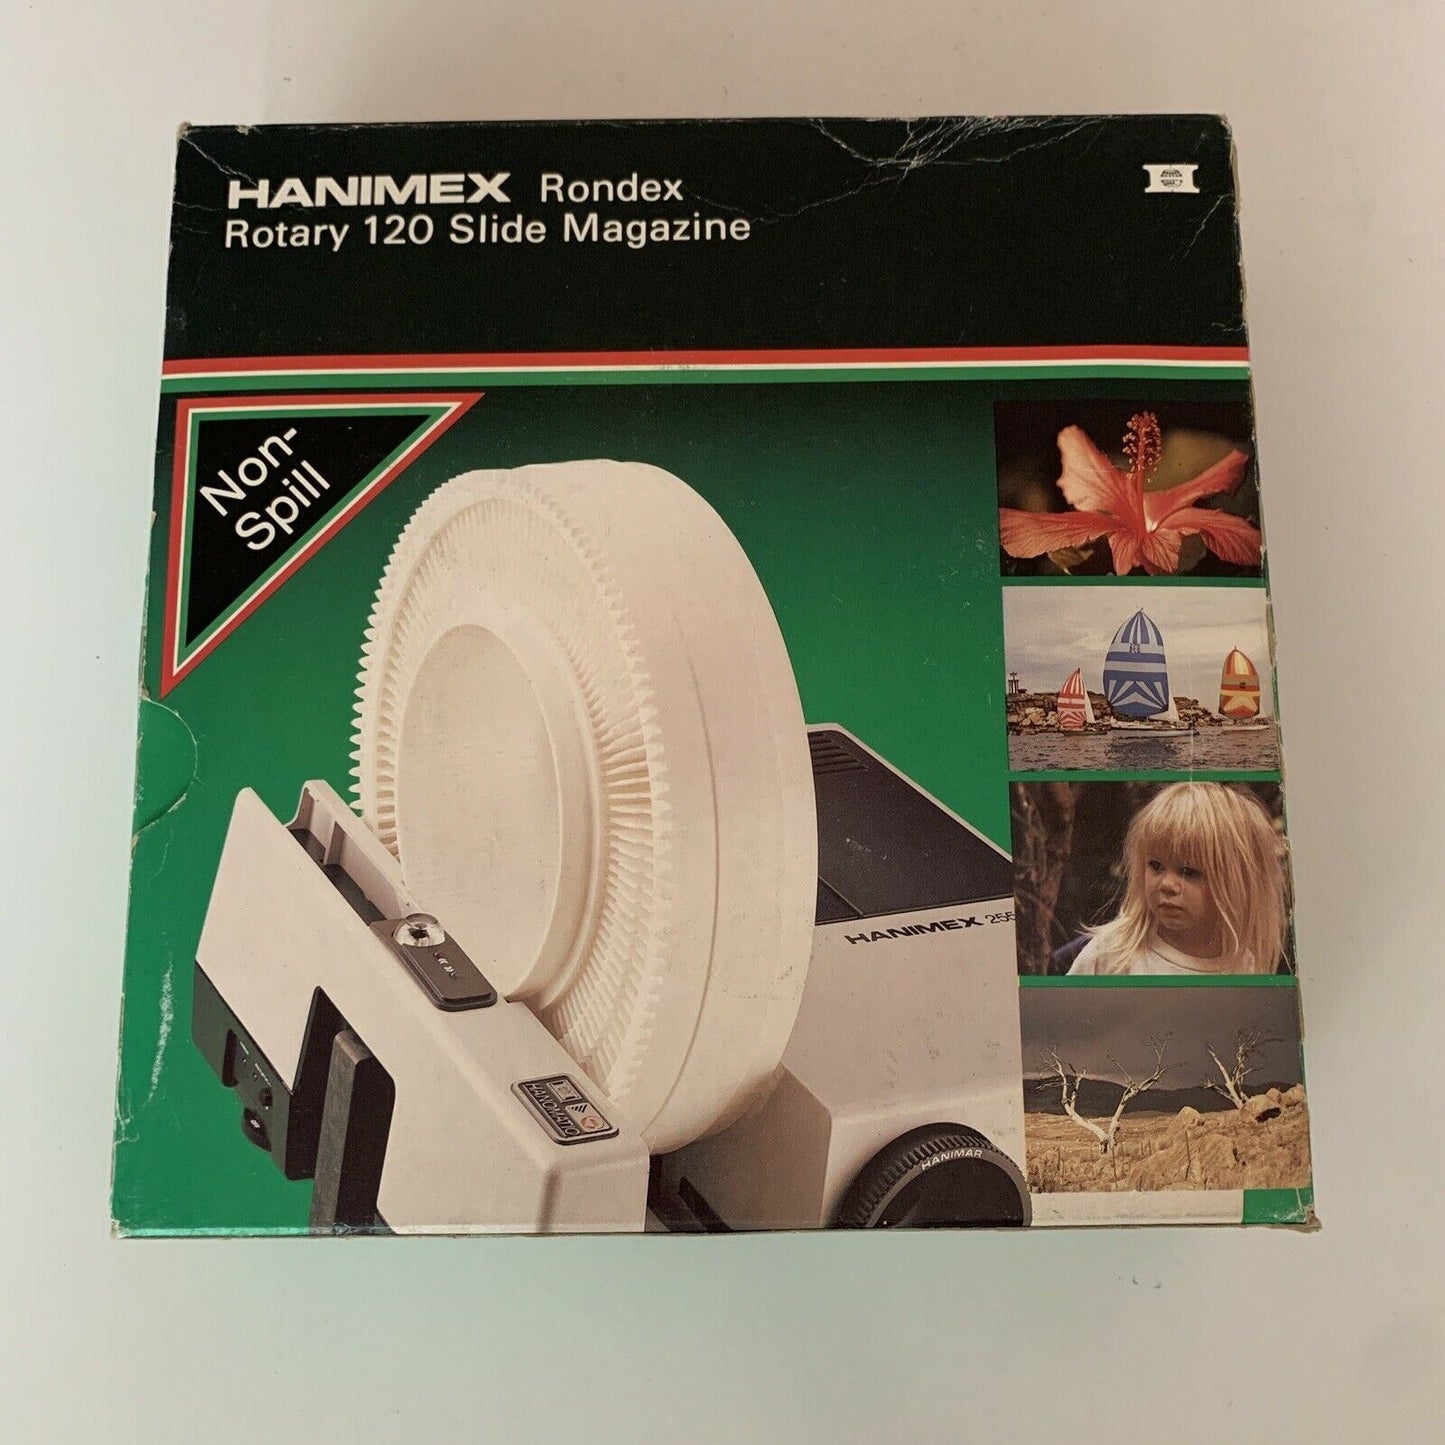 Hanimex Rondex Rotary 120 Slide Magazine for 35mm slides